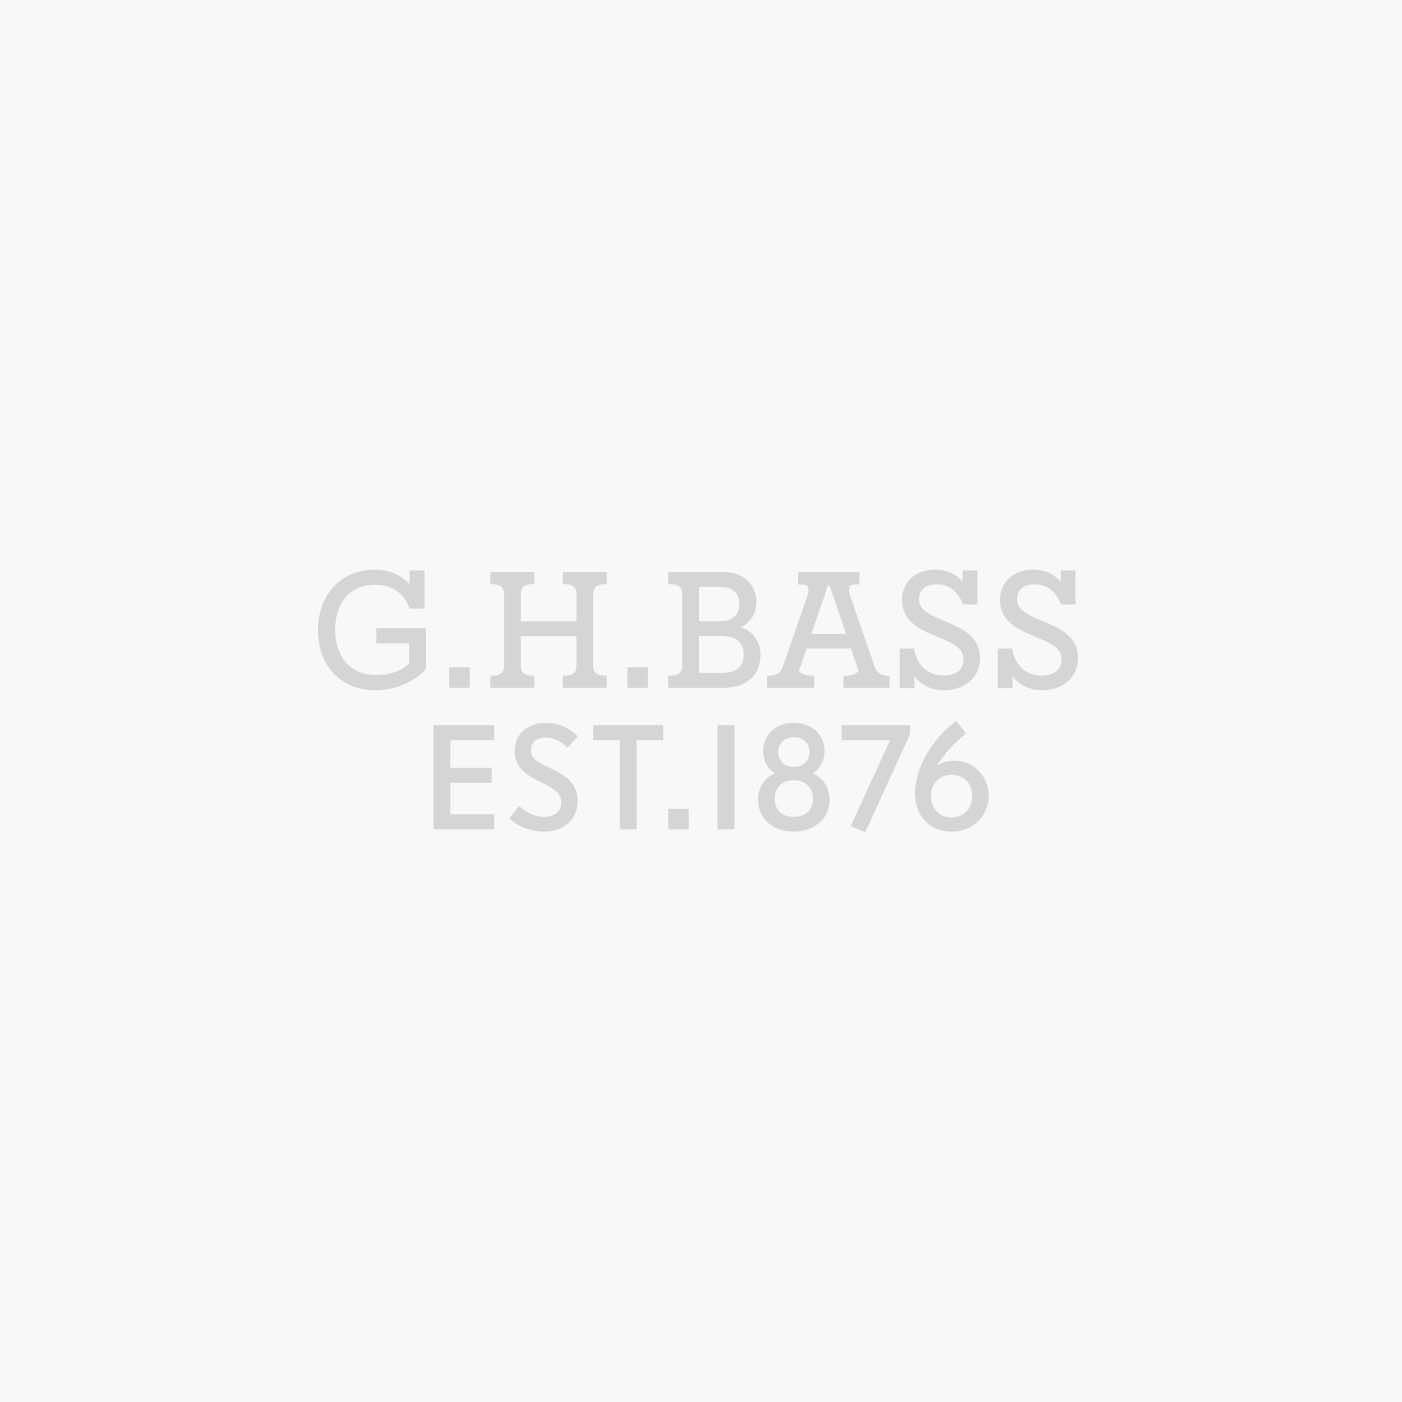 LEXINGTON TASSEL WEEJUNS | G.H. Bass